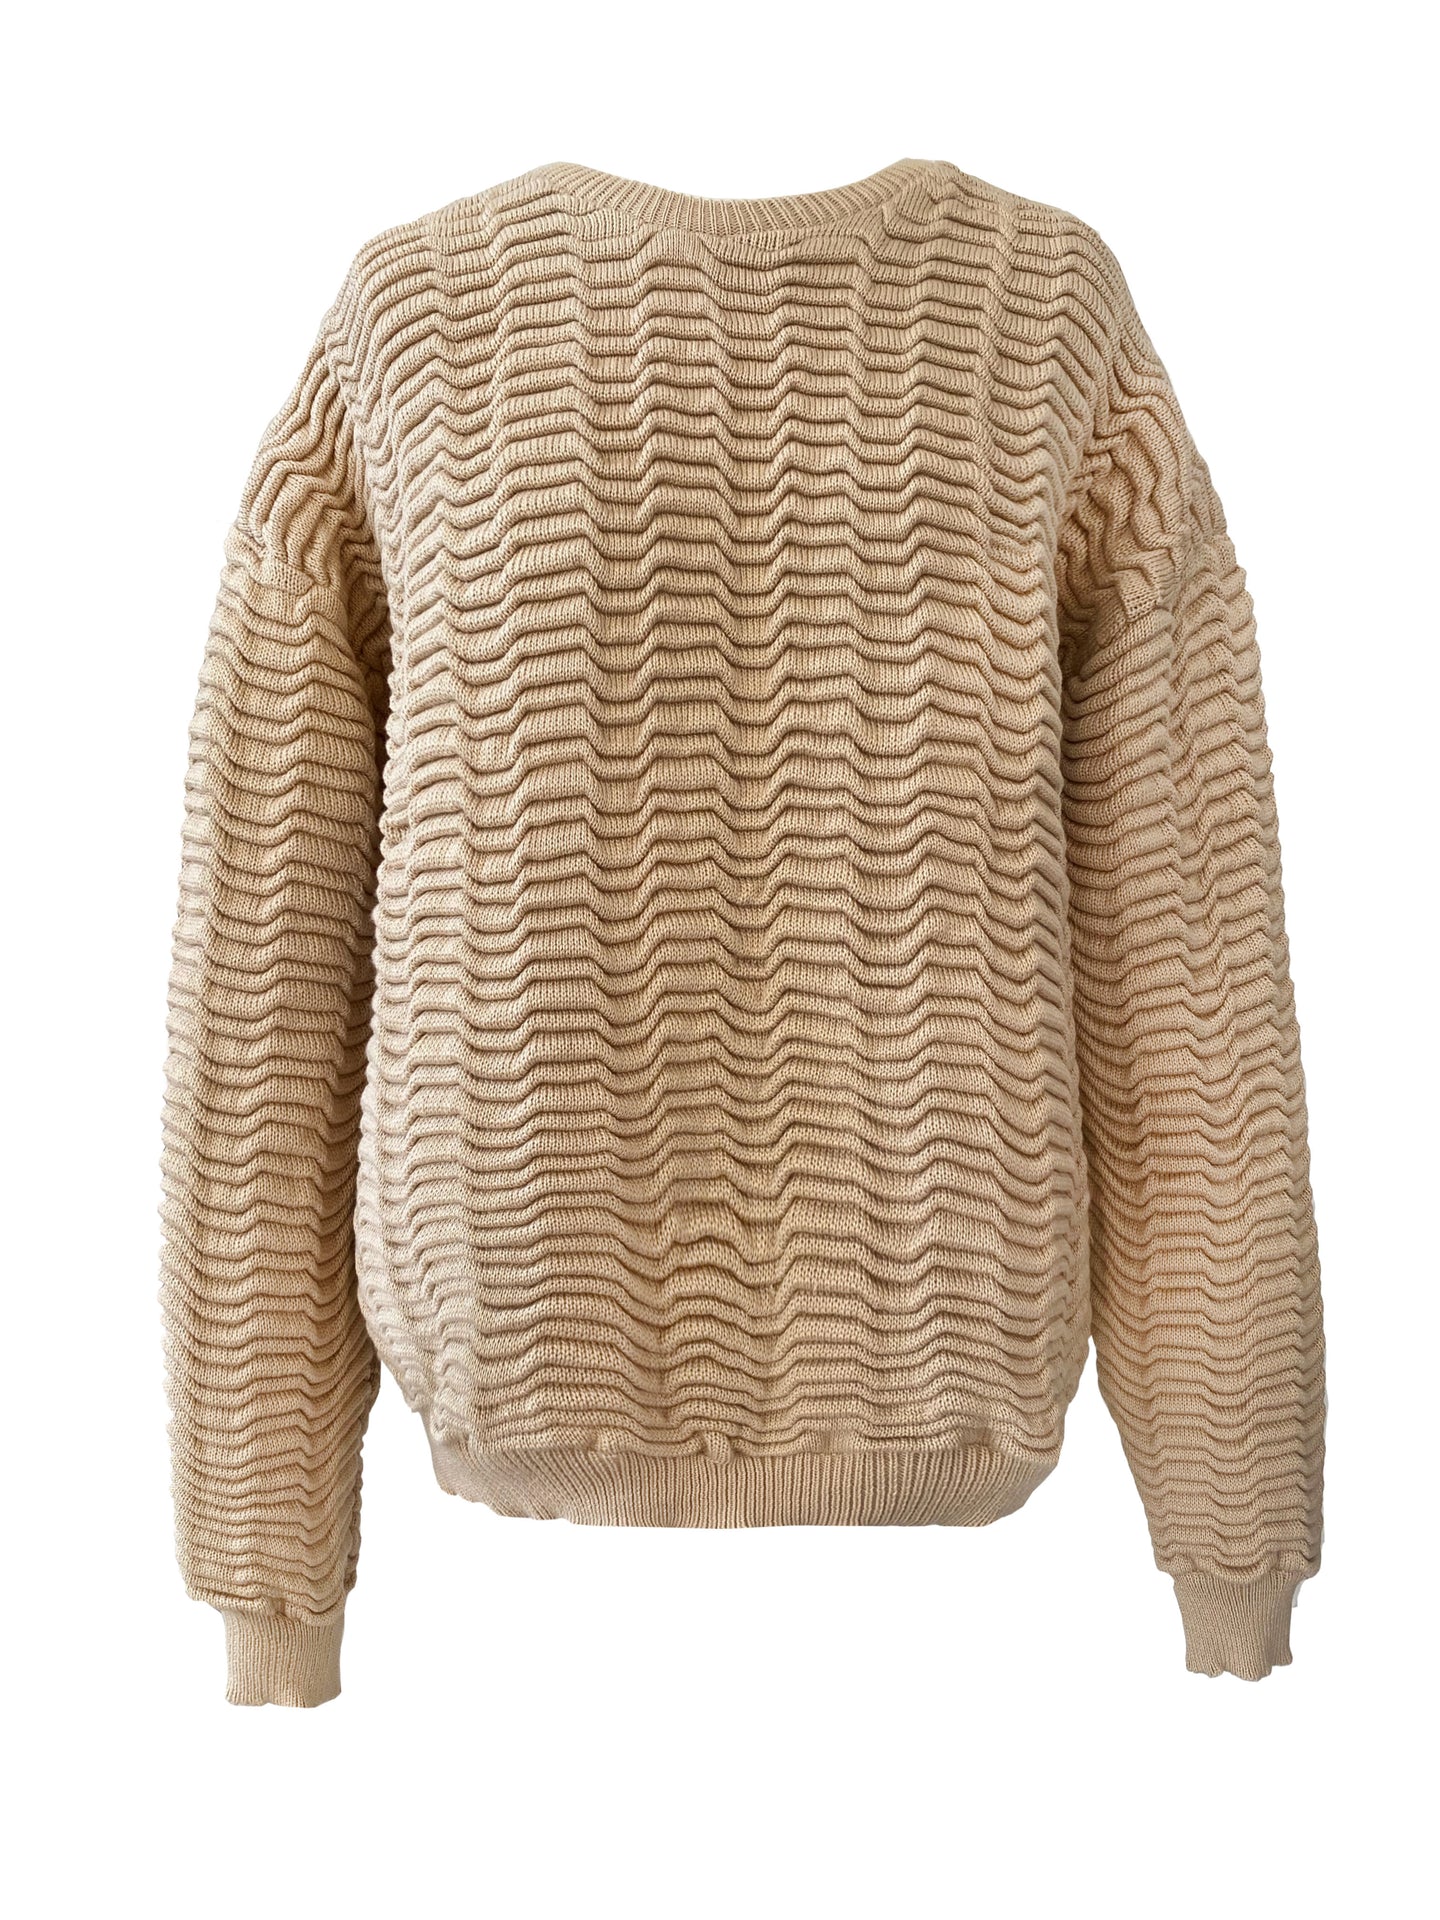 Big Spongy Wave Knit Sweater STRAW